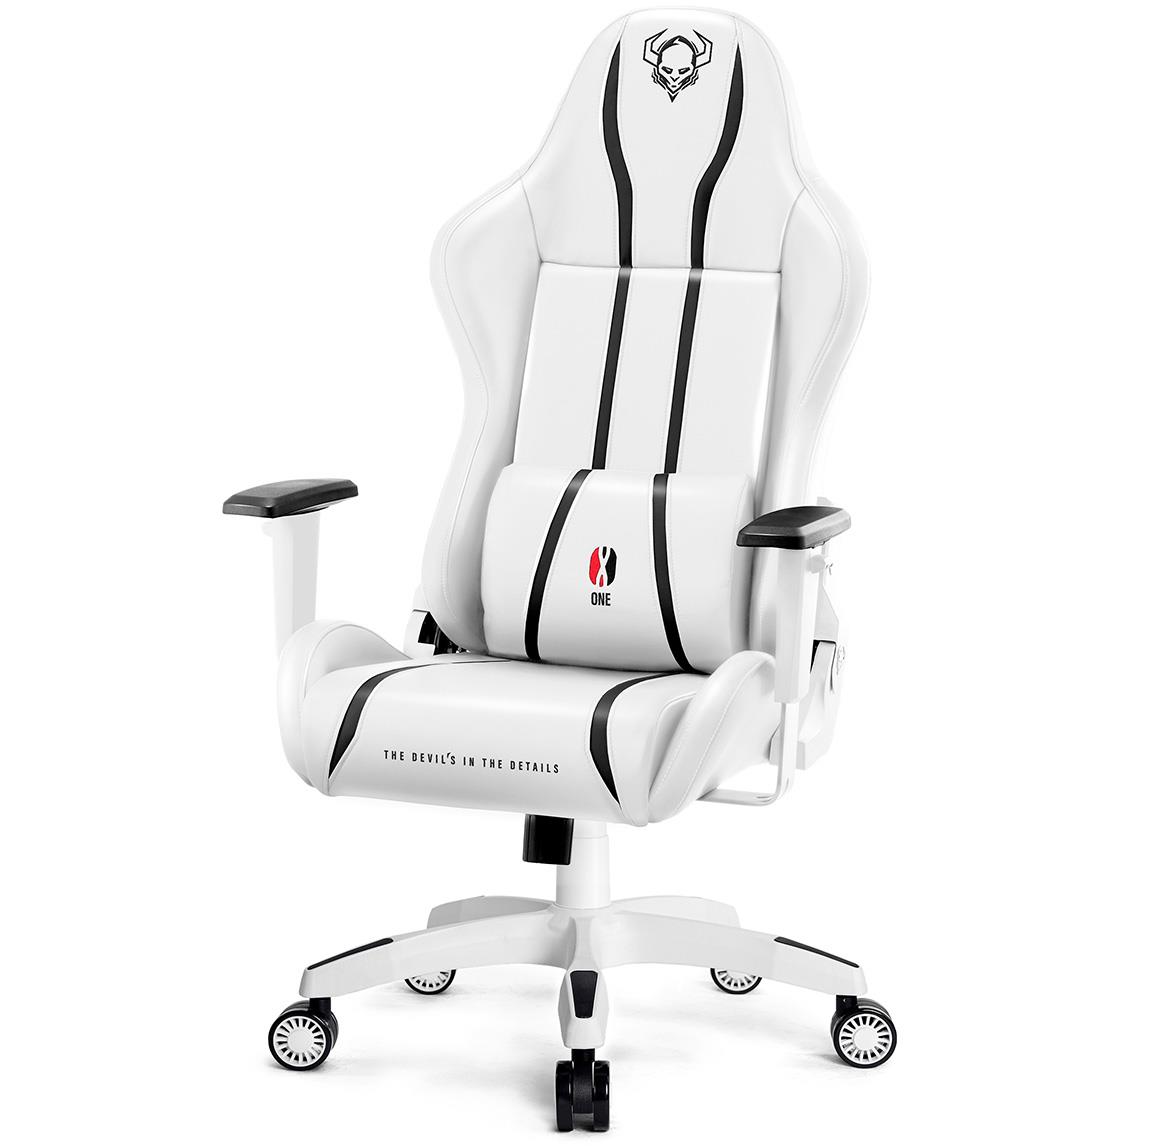 King Diablo X-One 2.0 kancelarijska stolica 72x54x134 cm belo crna